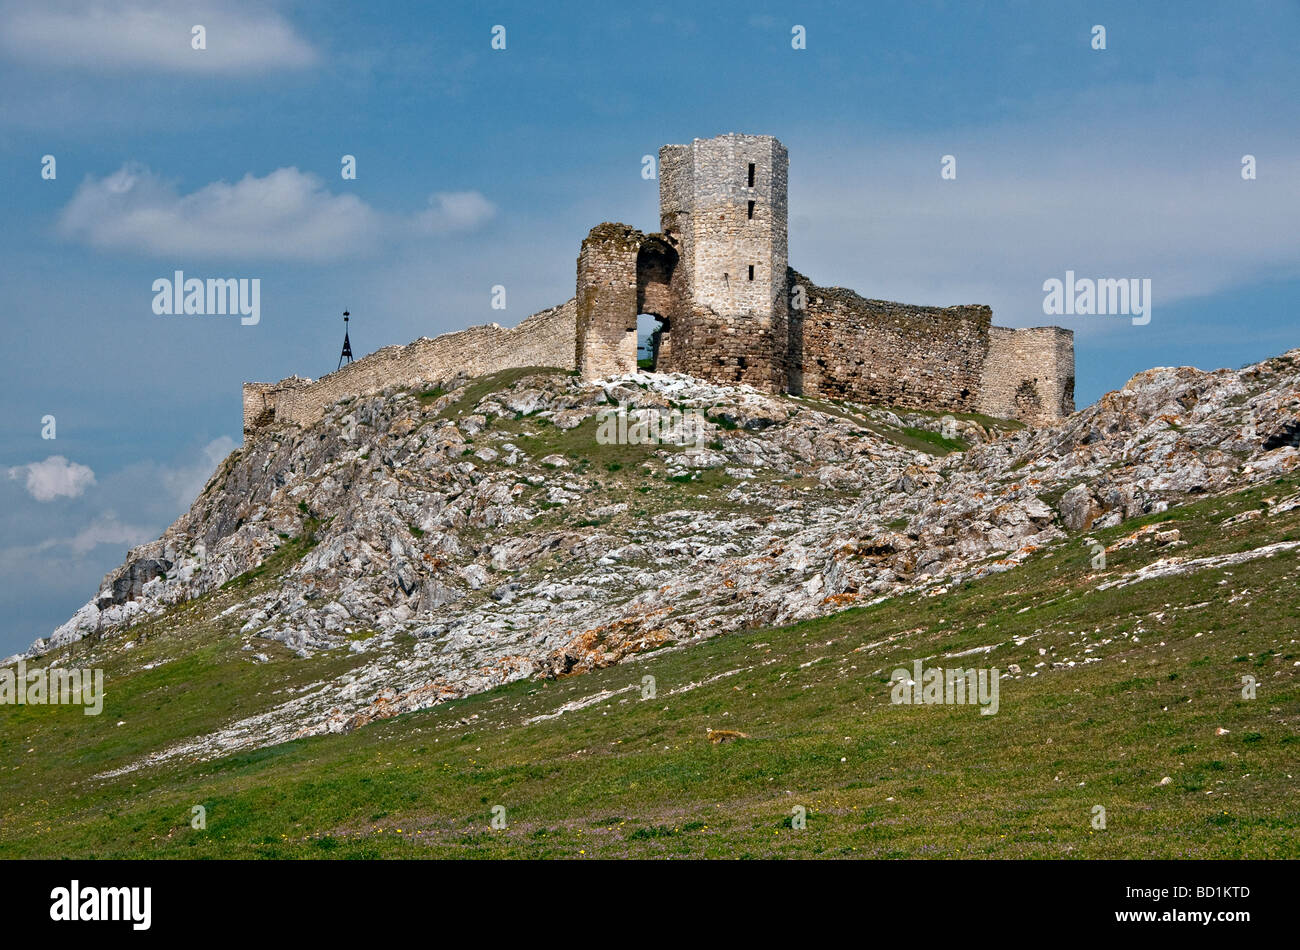 La Romania è la rovina della fortezza bizantina di Heracleea, vicino Enisala, affacciato sul lago Razim Foto Stock